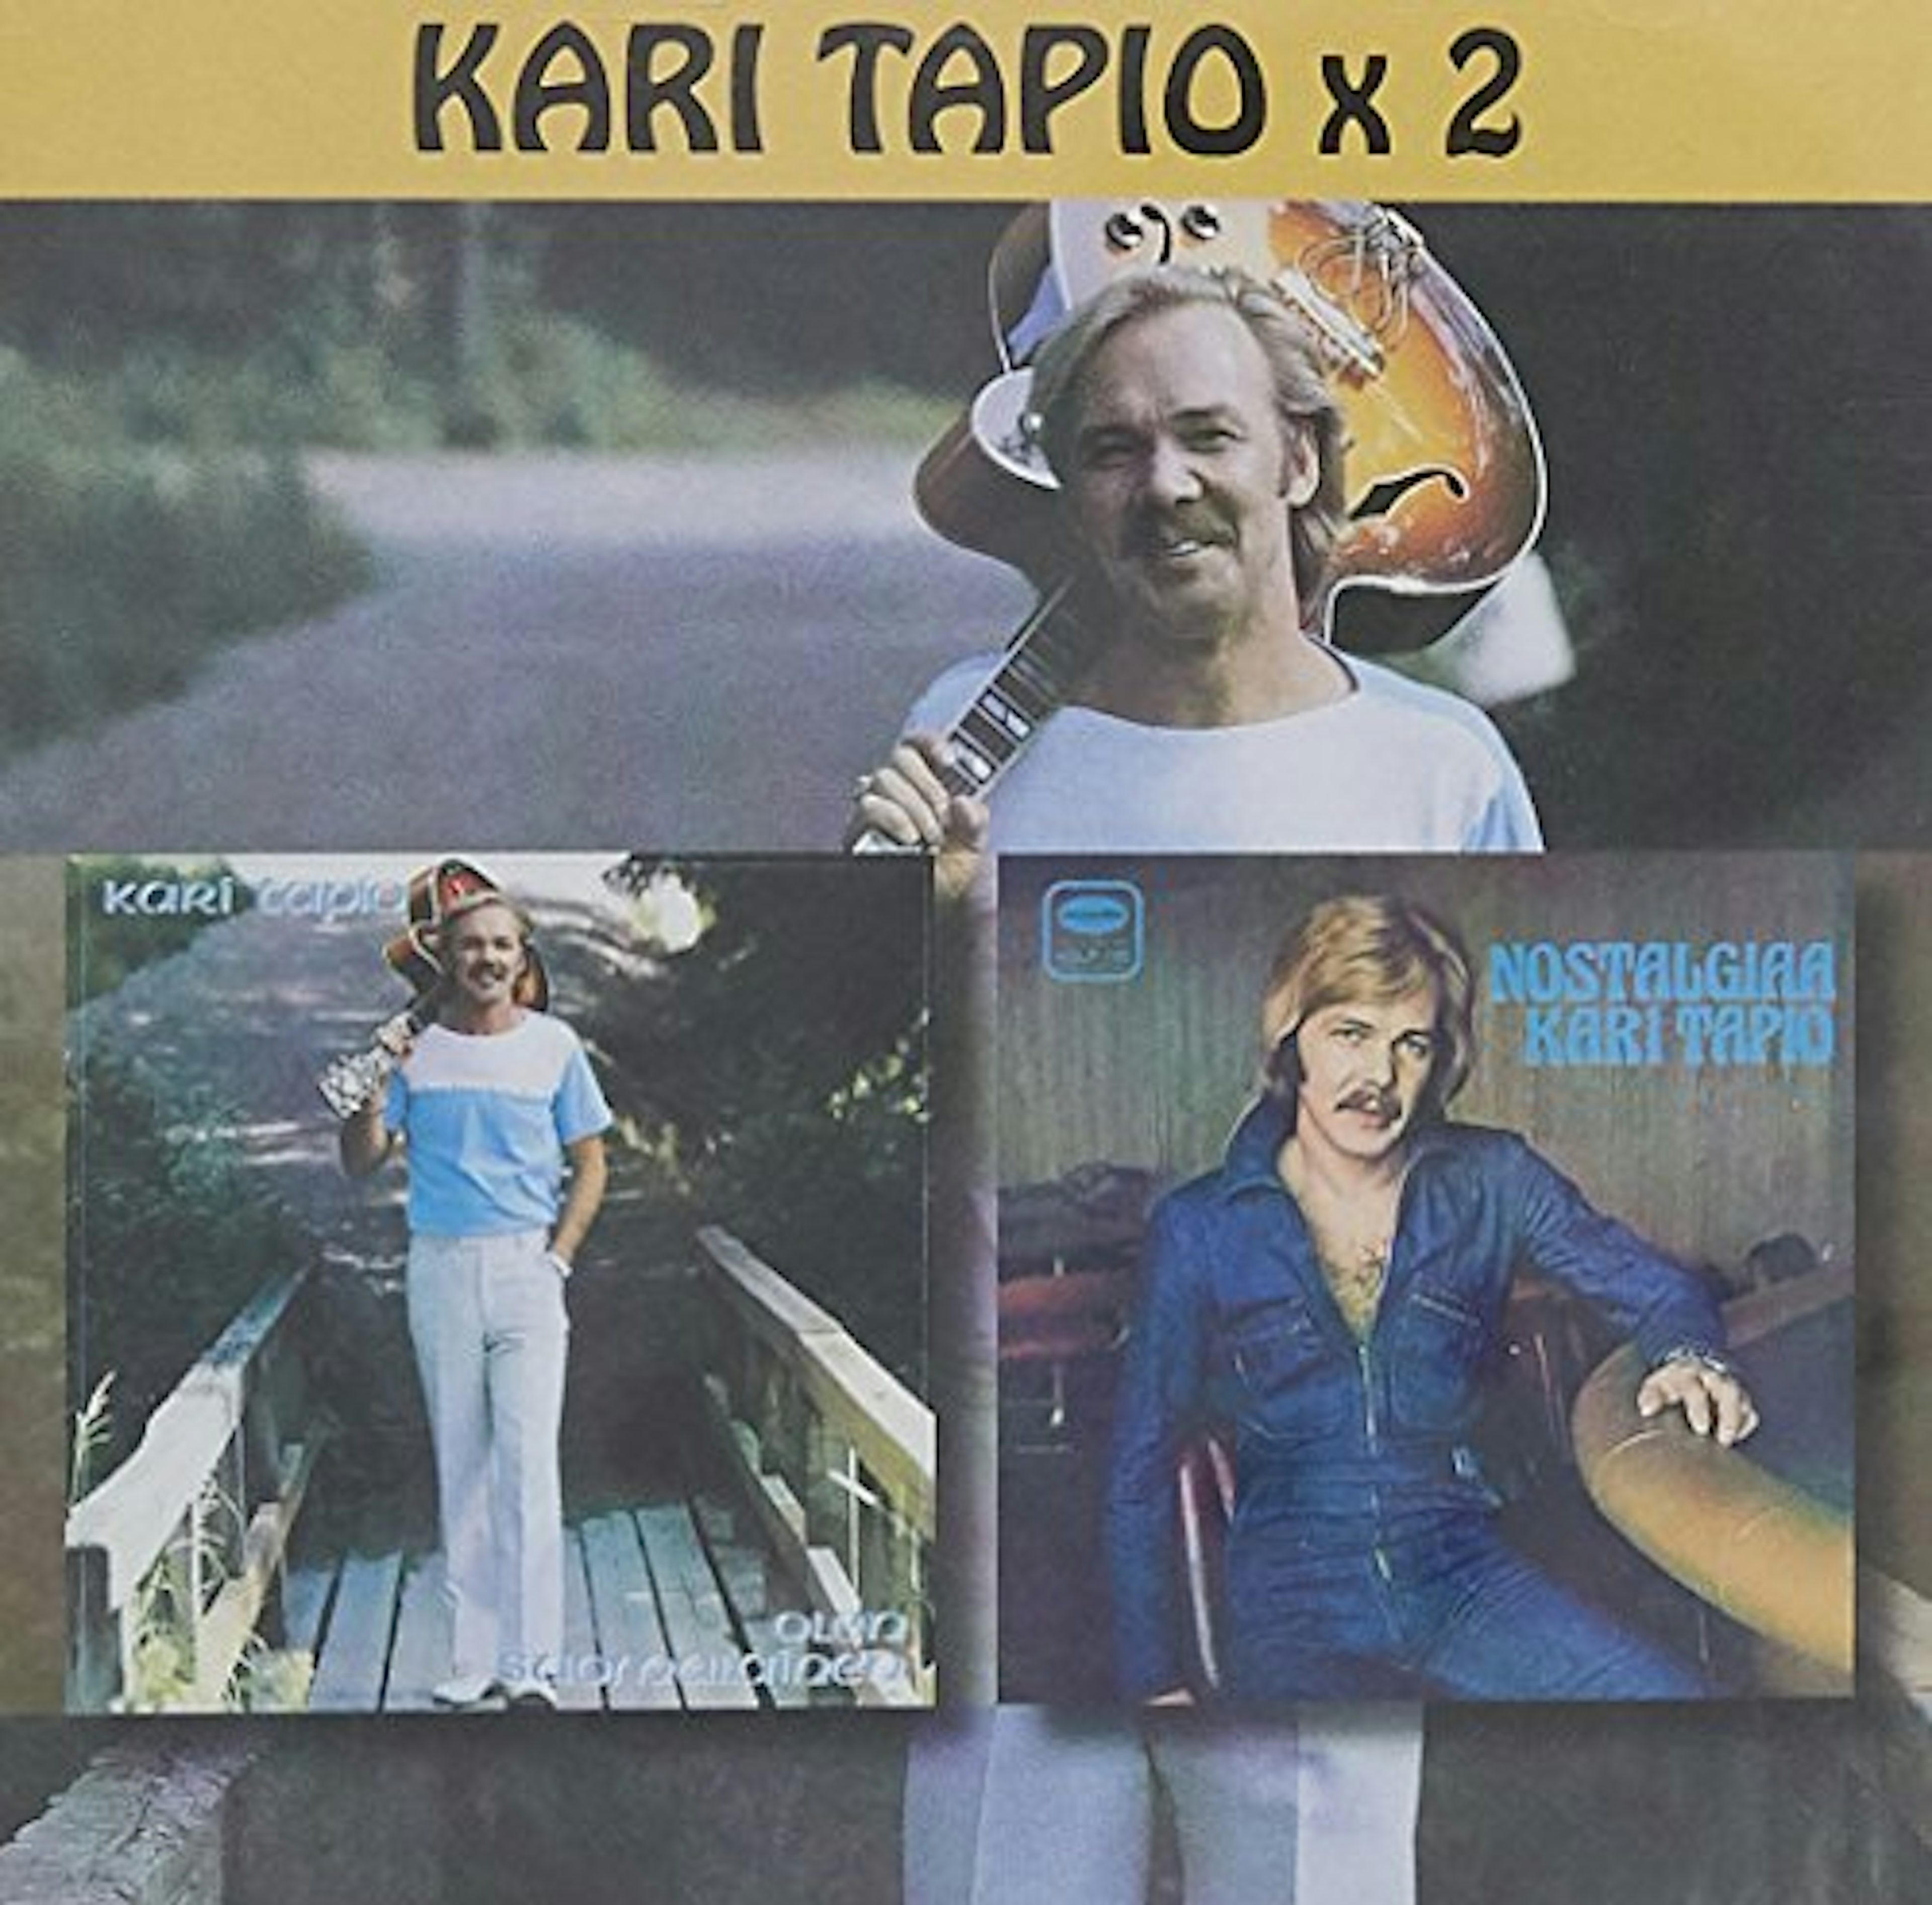 Kari Tapio OLEN SUOMALAINEN/NOSTALGIAA CD